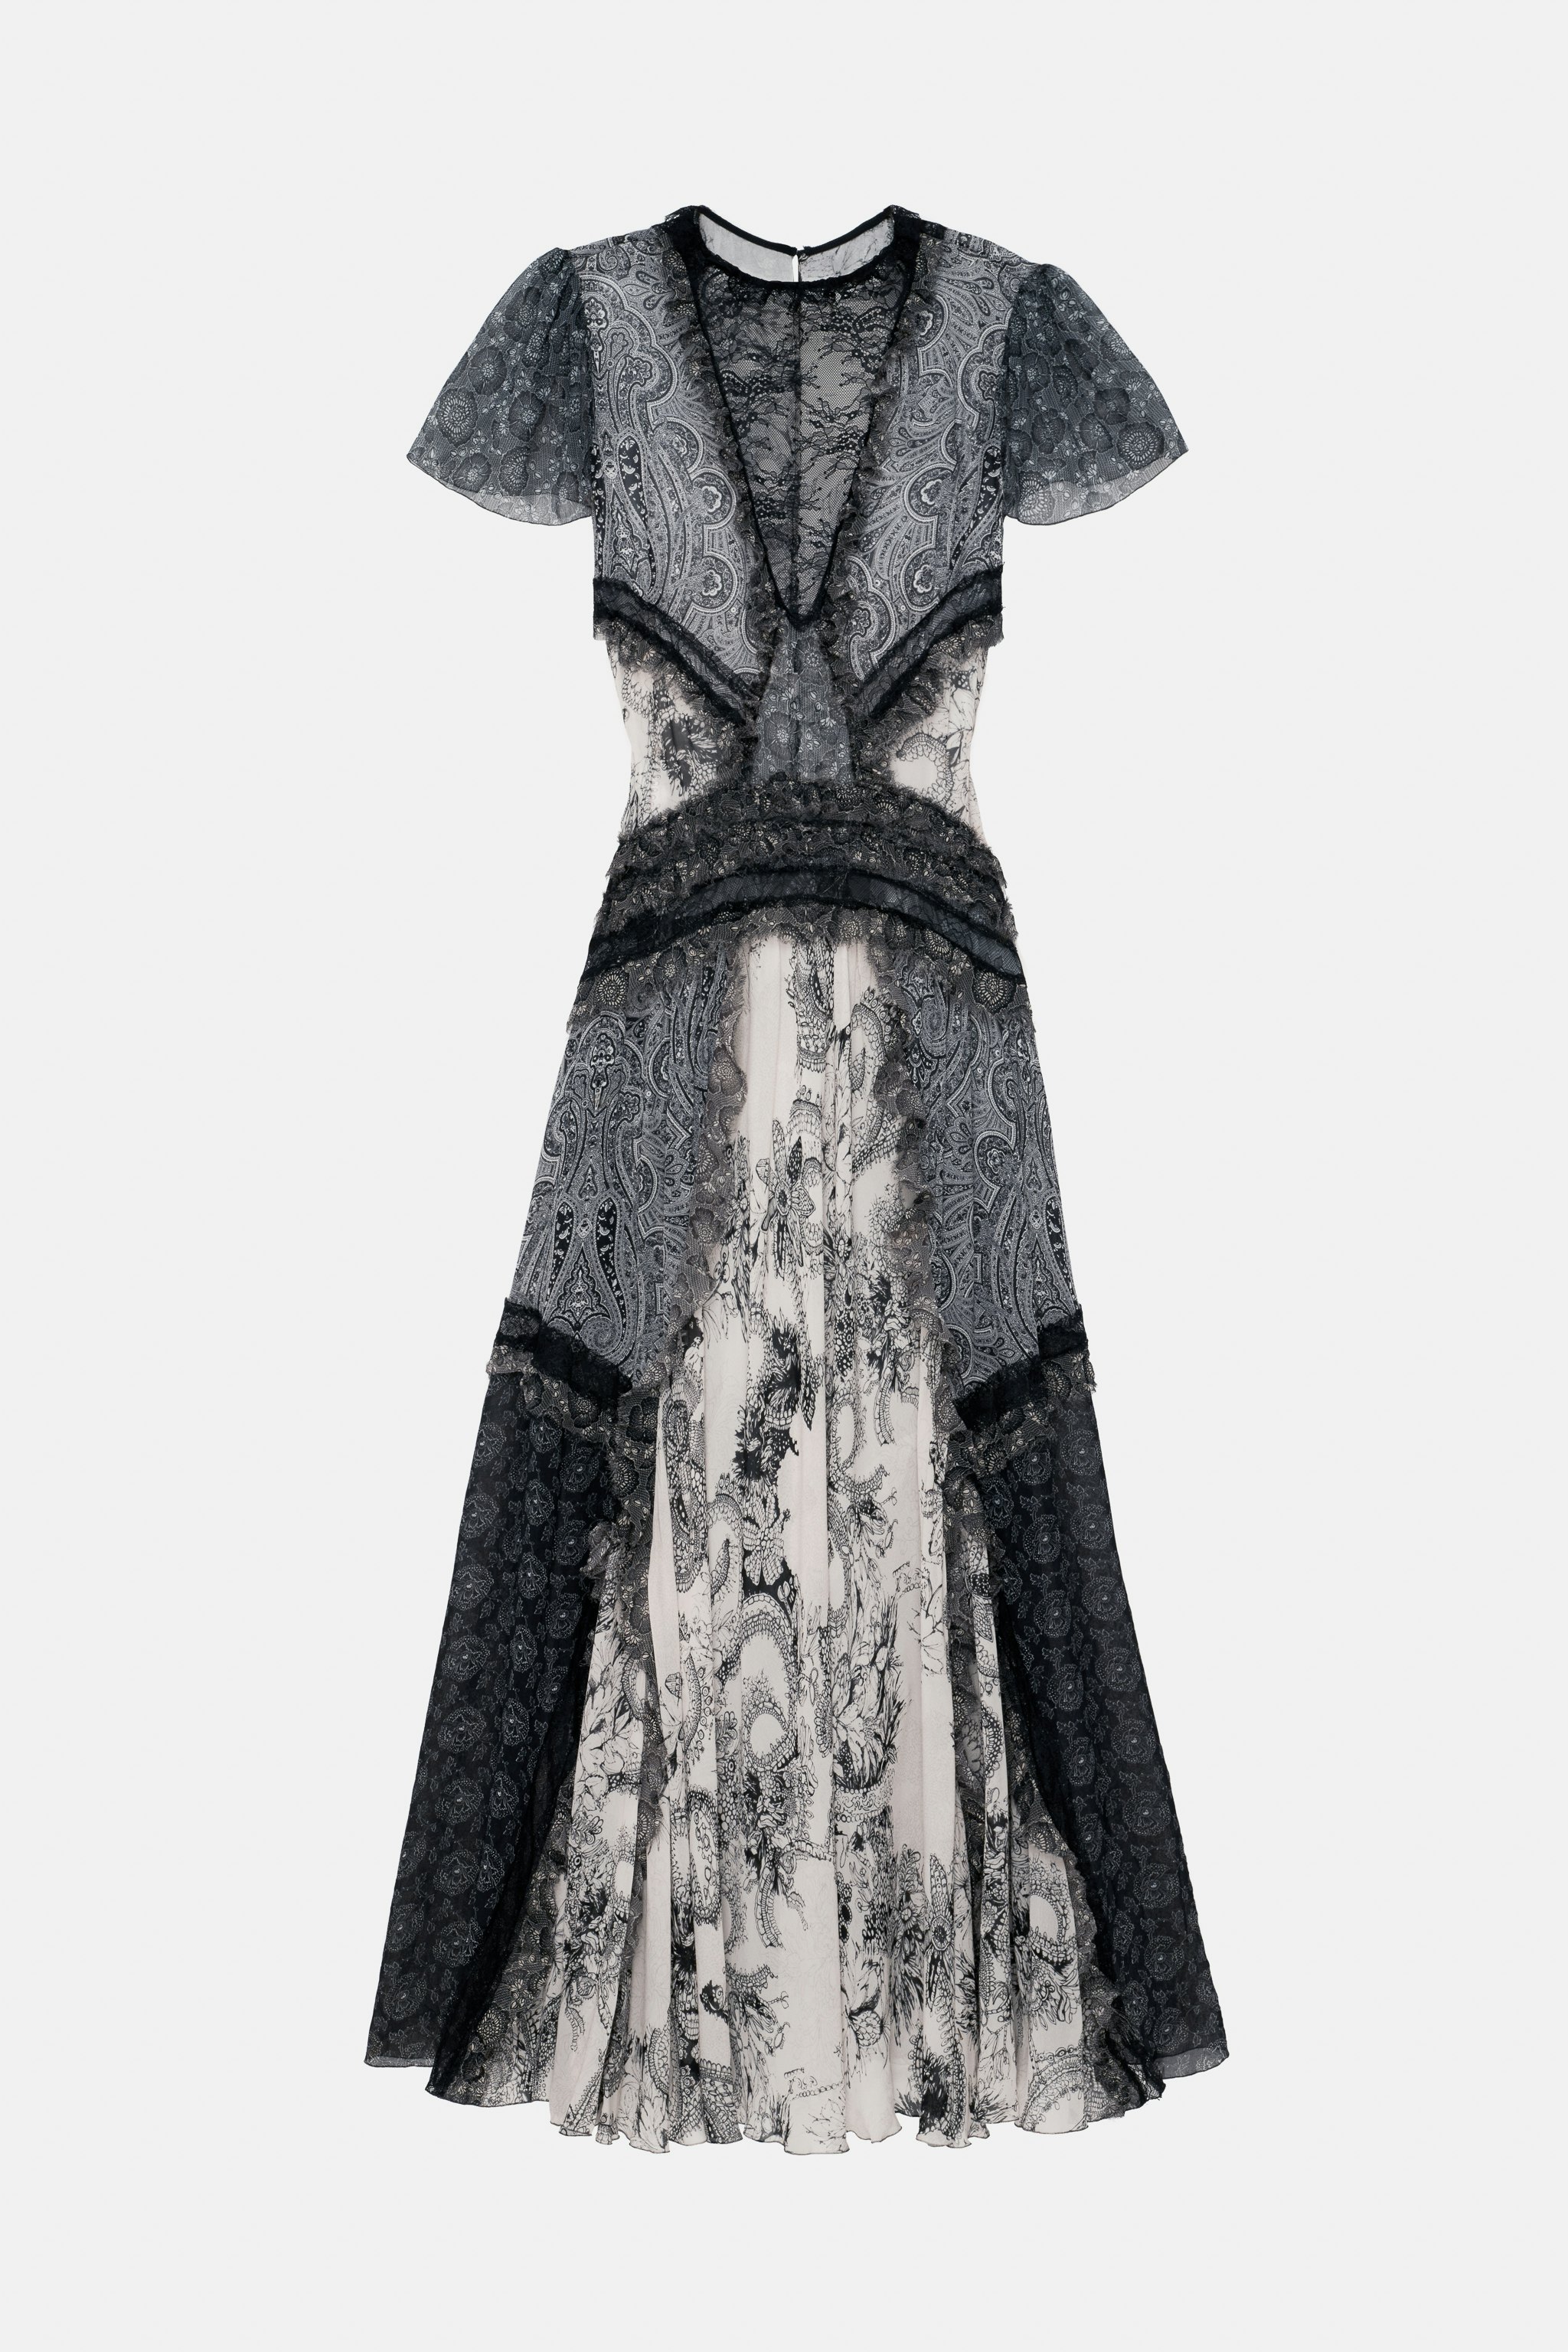 Así es la nueva 'Studio Collection' de Zara: romántica, gótica, femenina y  exclusiva